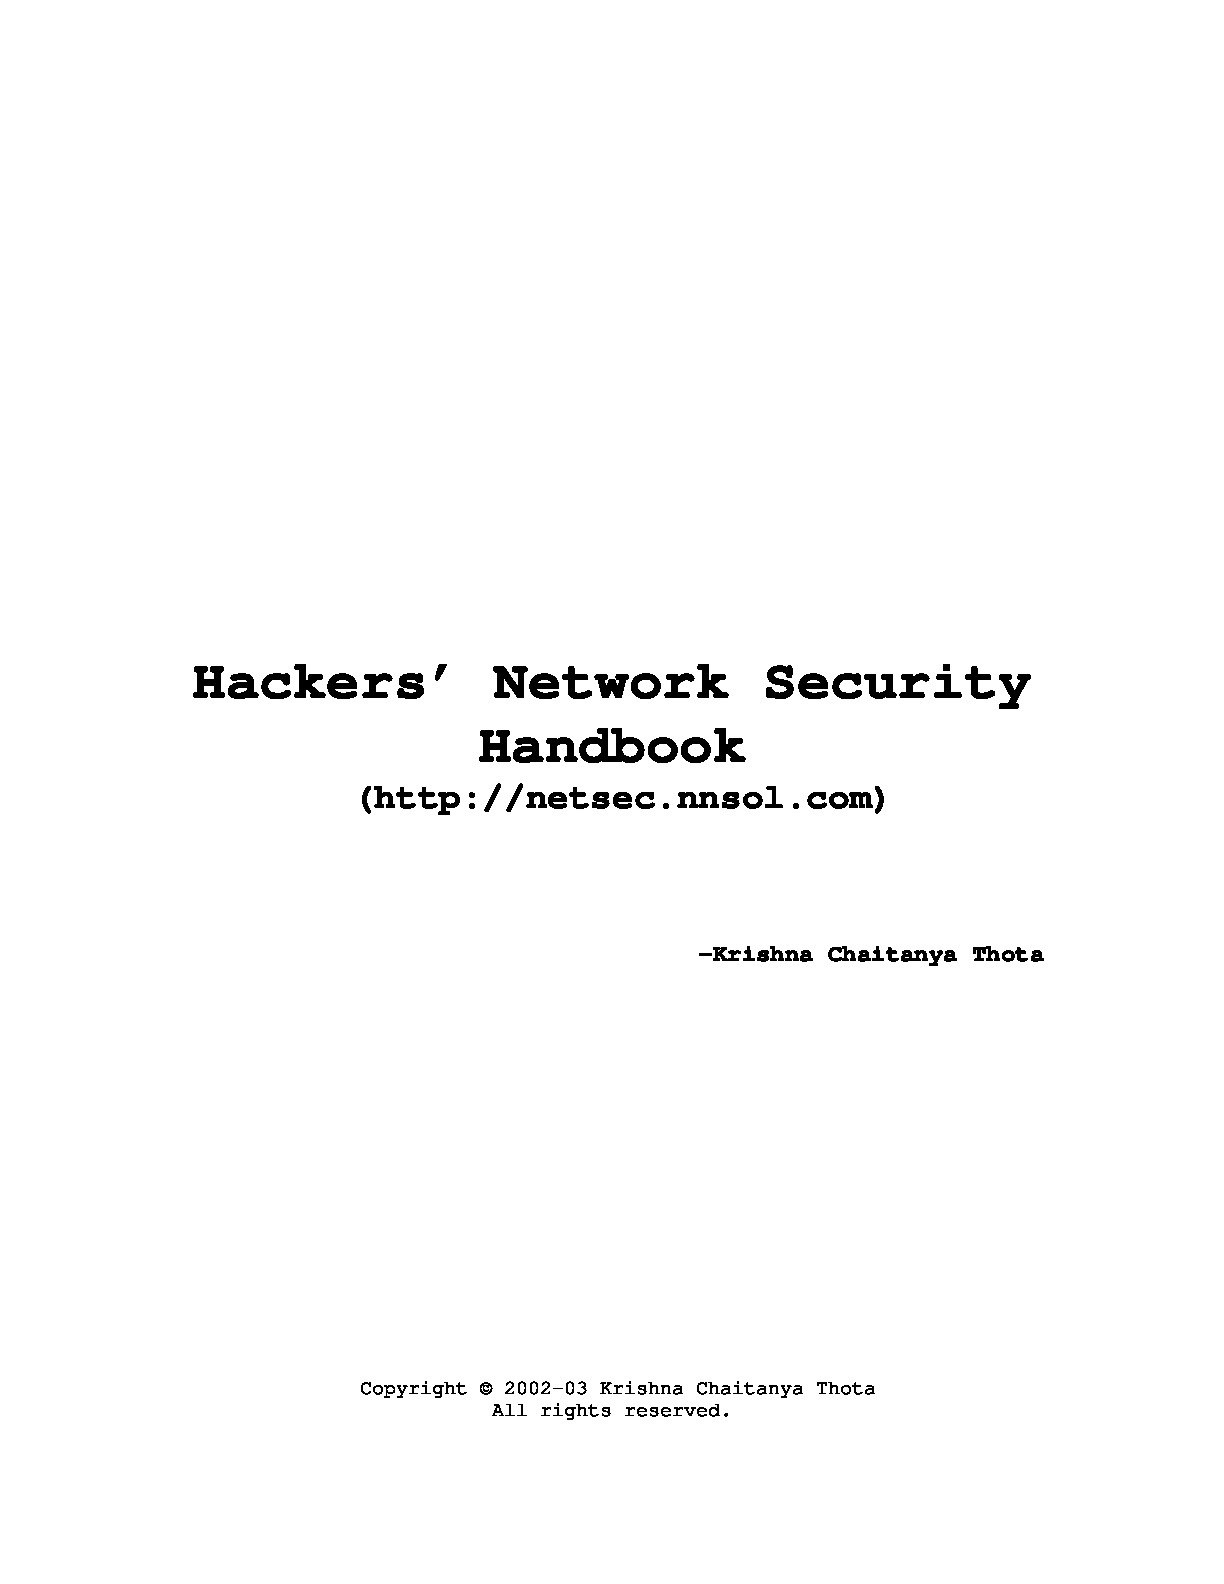 Hacker_Network_Security_Handbook